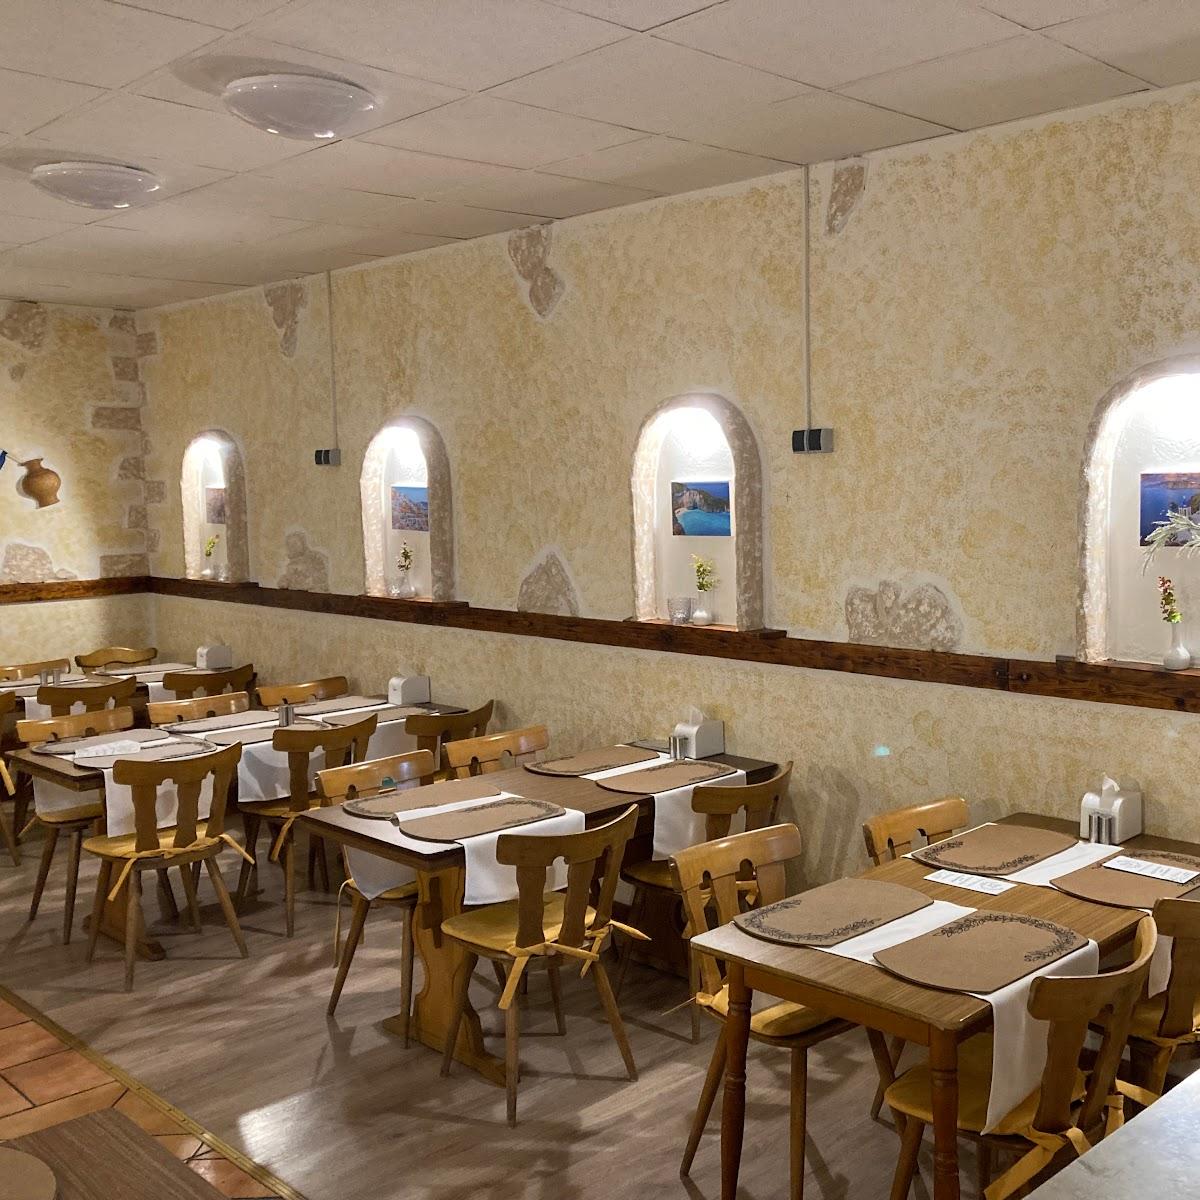 Restaurant "KLIMIS GRILL" in Sankt Augustin